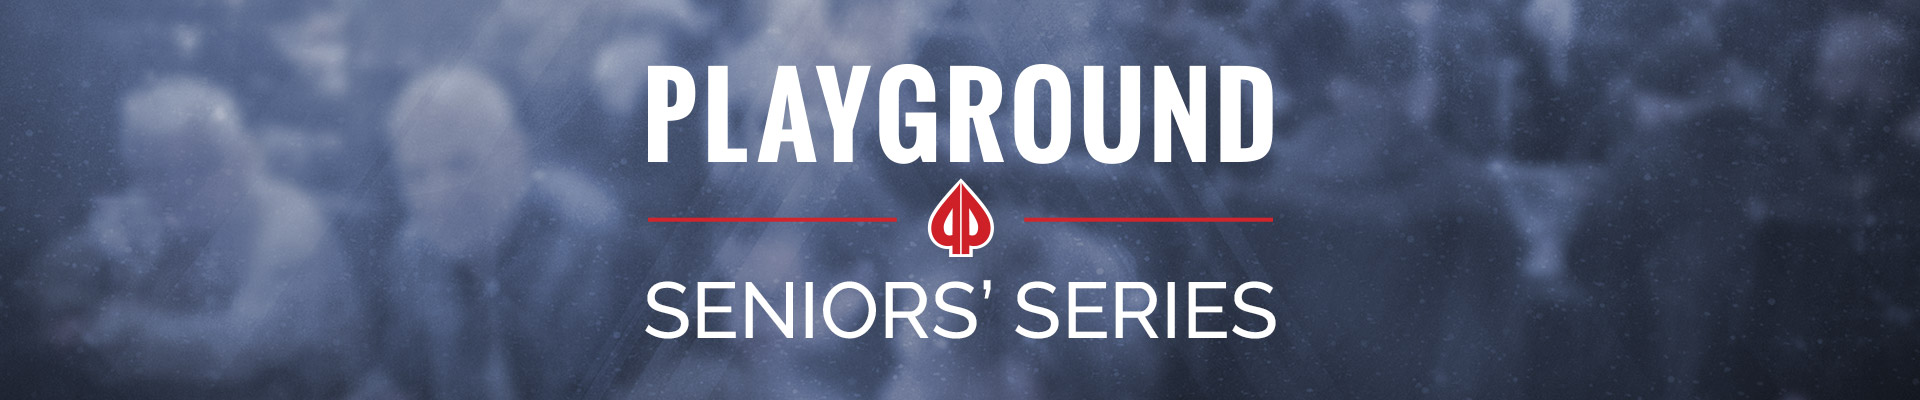 Playground Seniors Series 2020